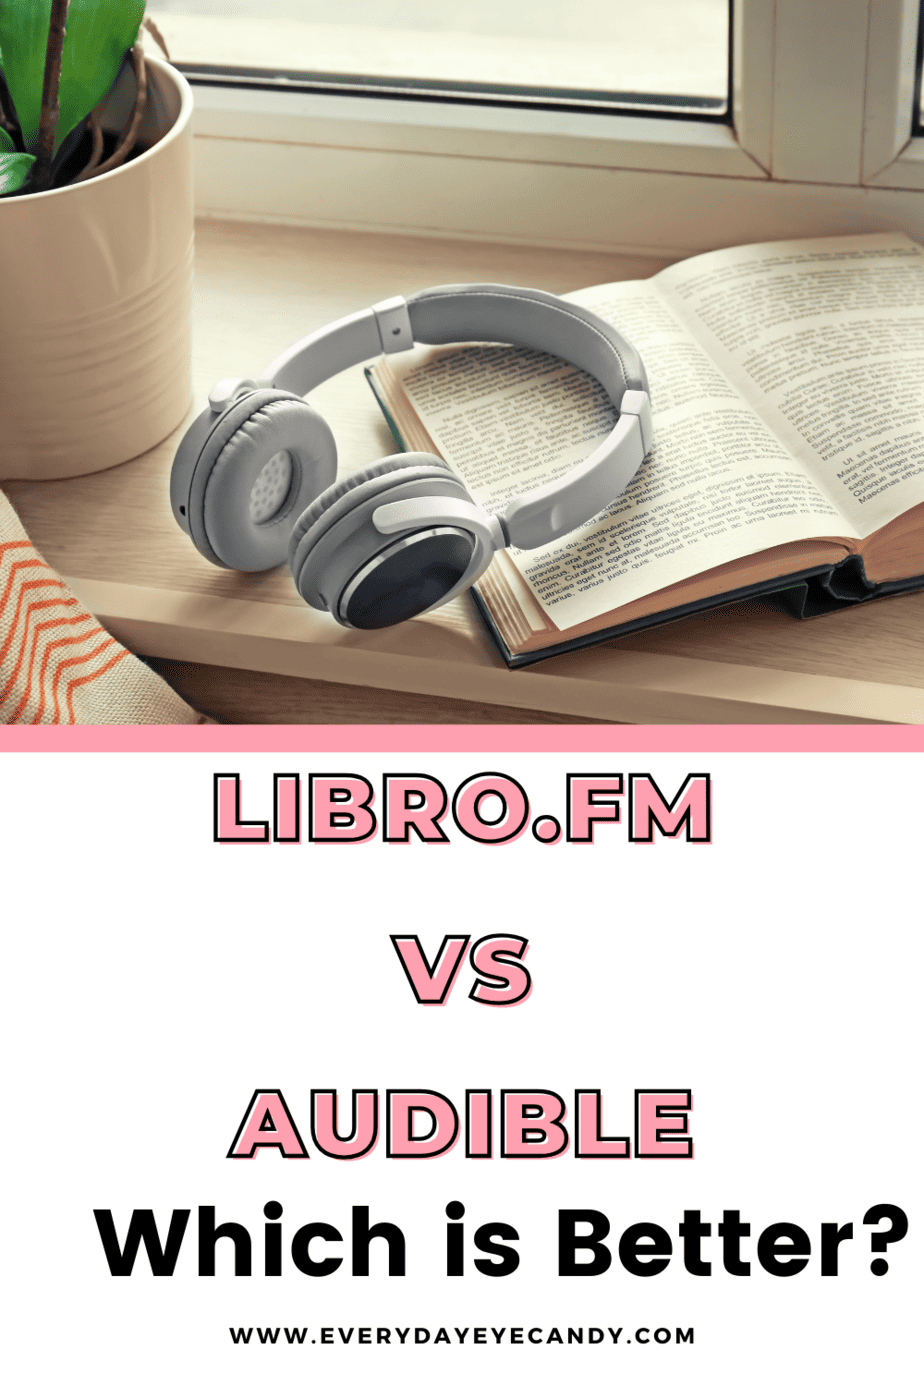 audible vs scribd